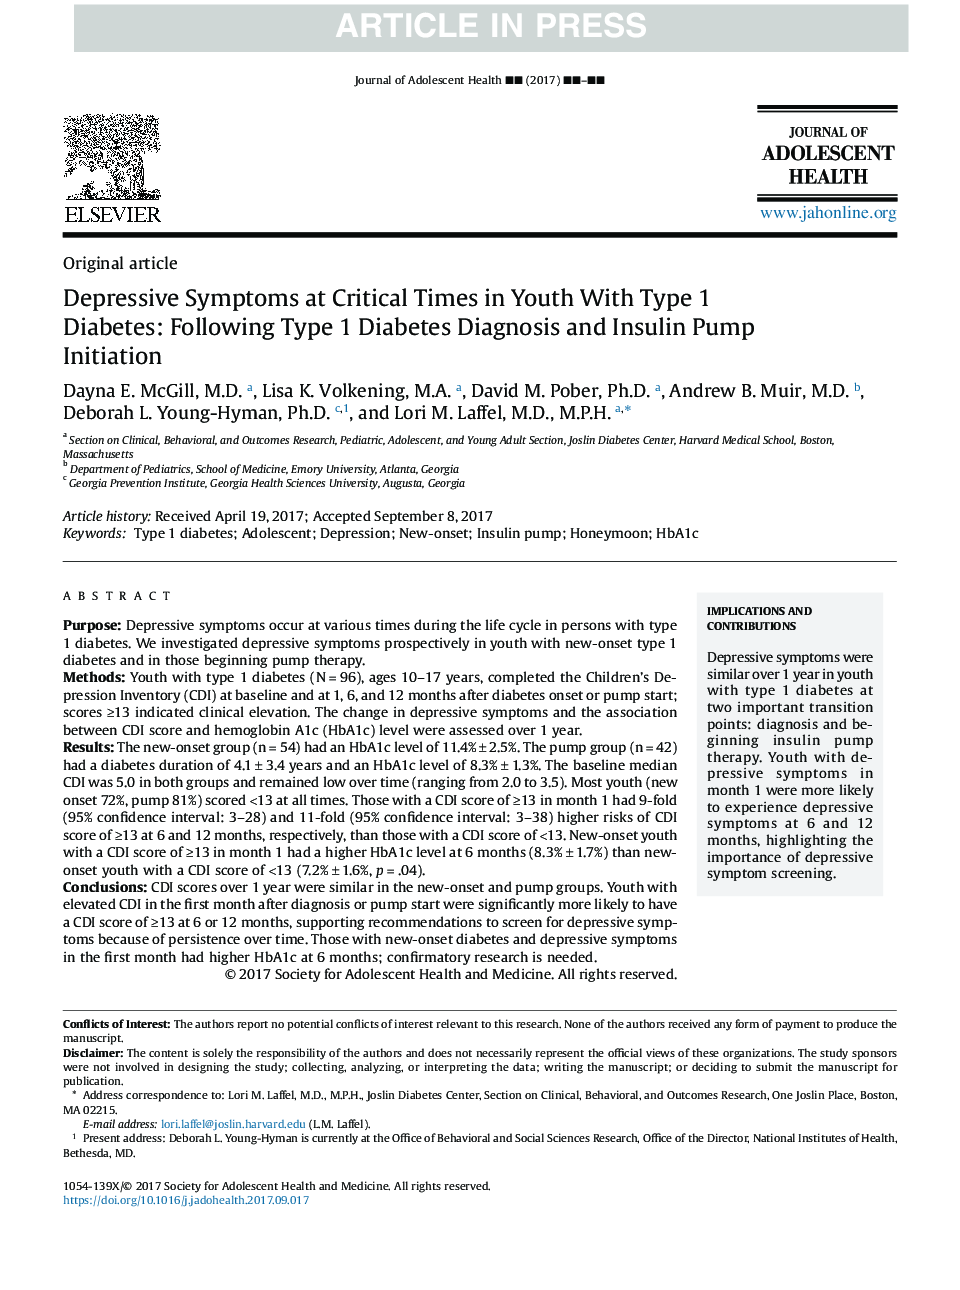 علائم افسردگی در زمان بحرانی در جوانان مبتلا به دیابت نوع 1: پس از تشخیص دیابت نوع 1 و شروع پمپ انسولین 